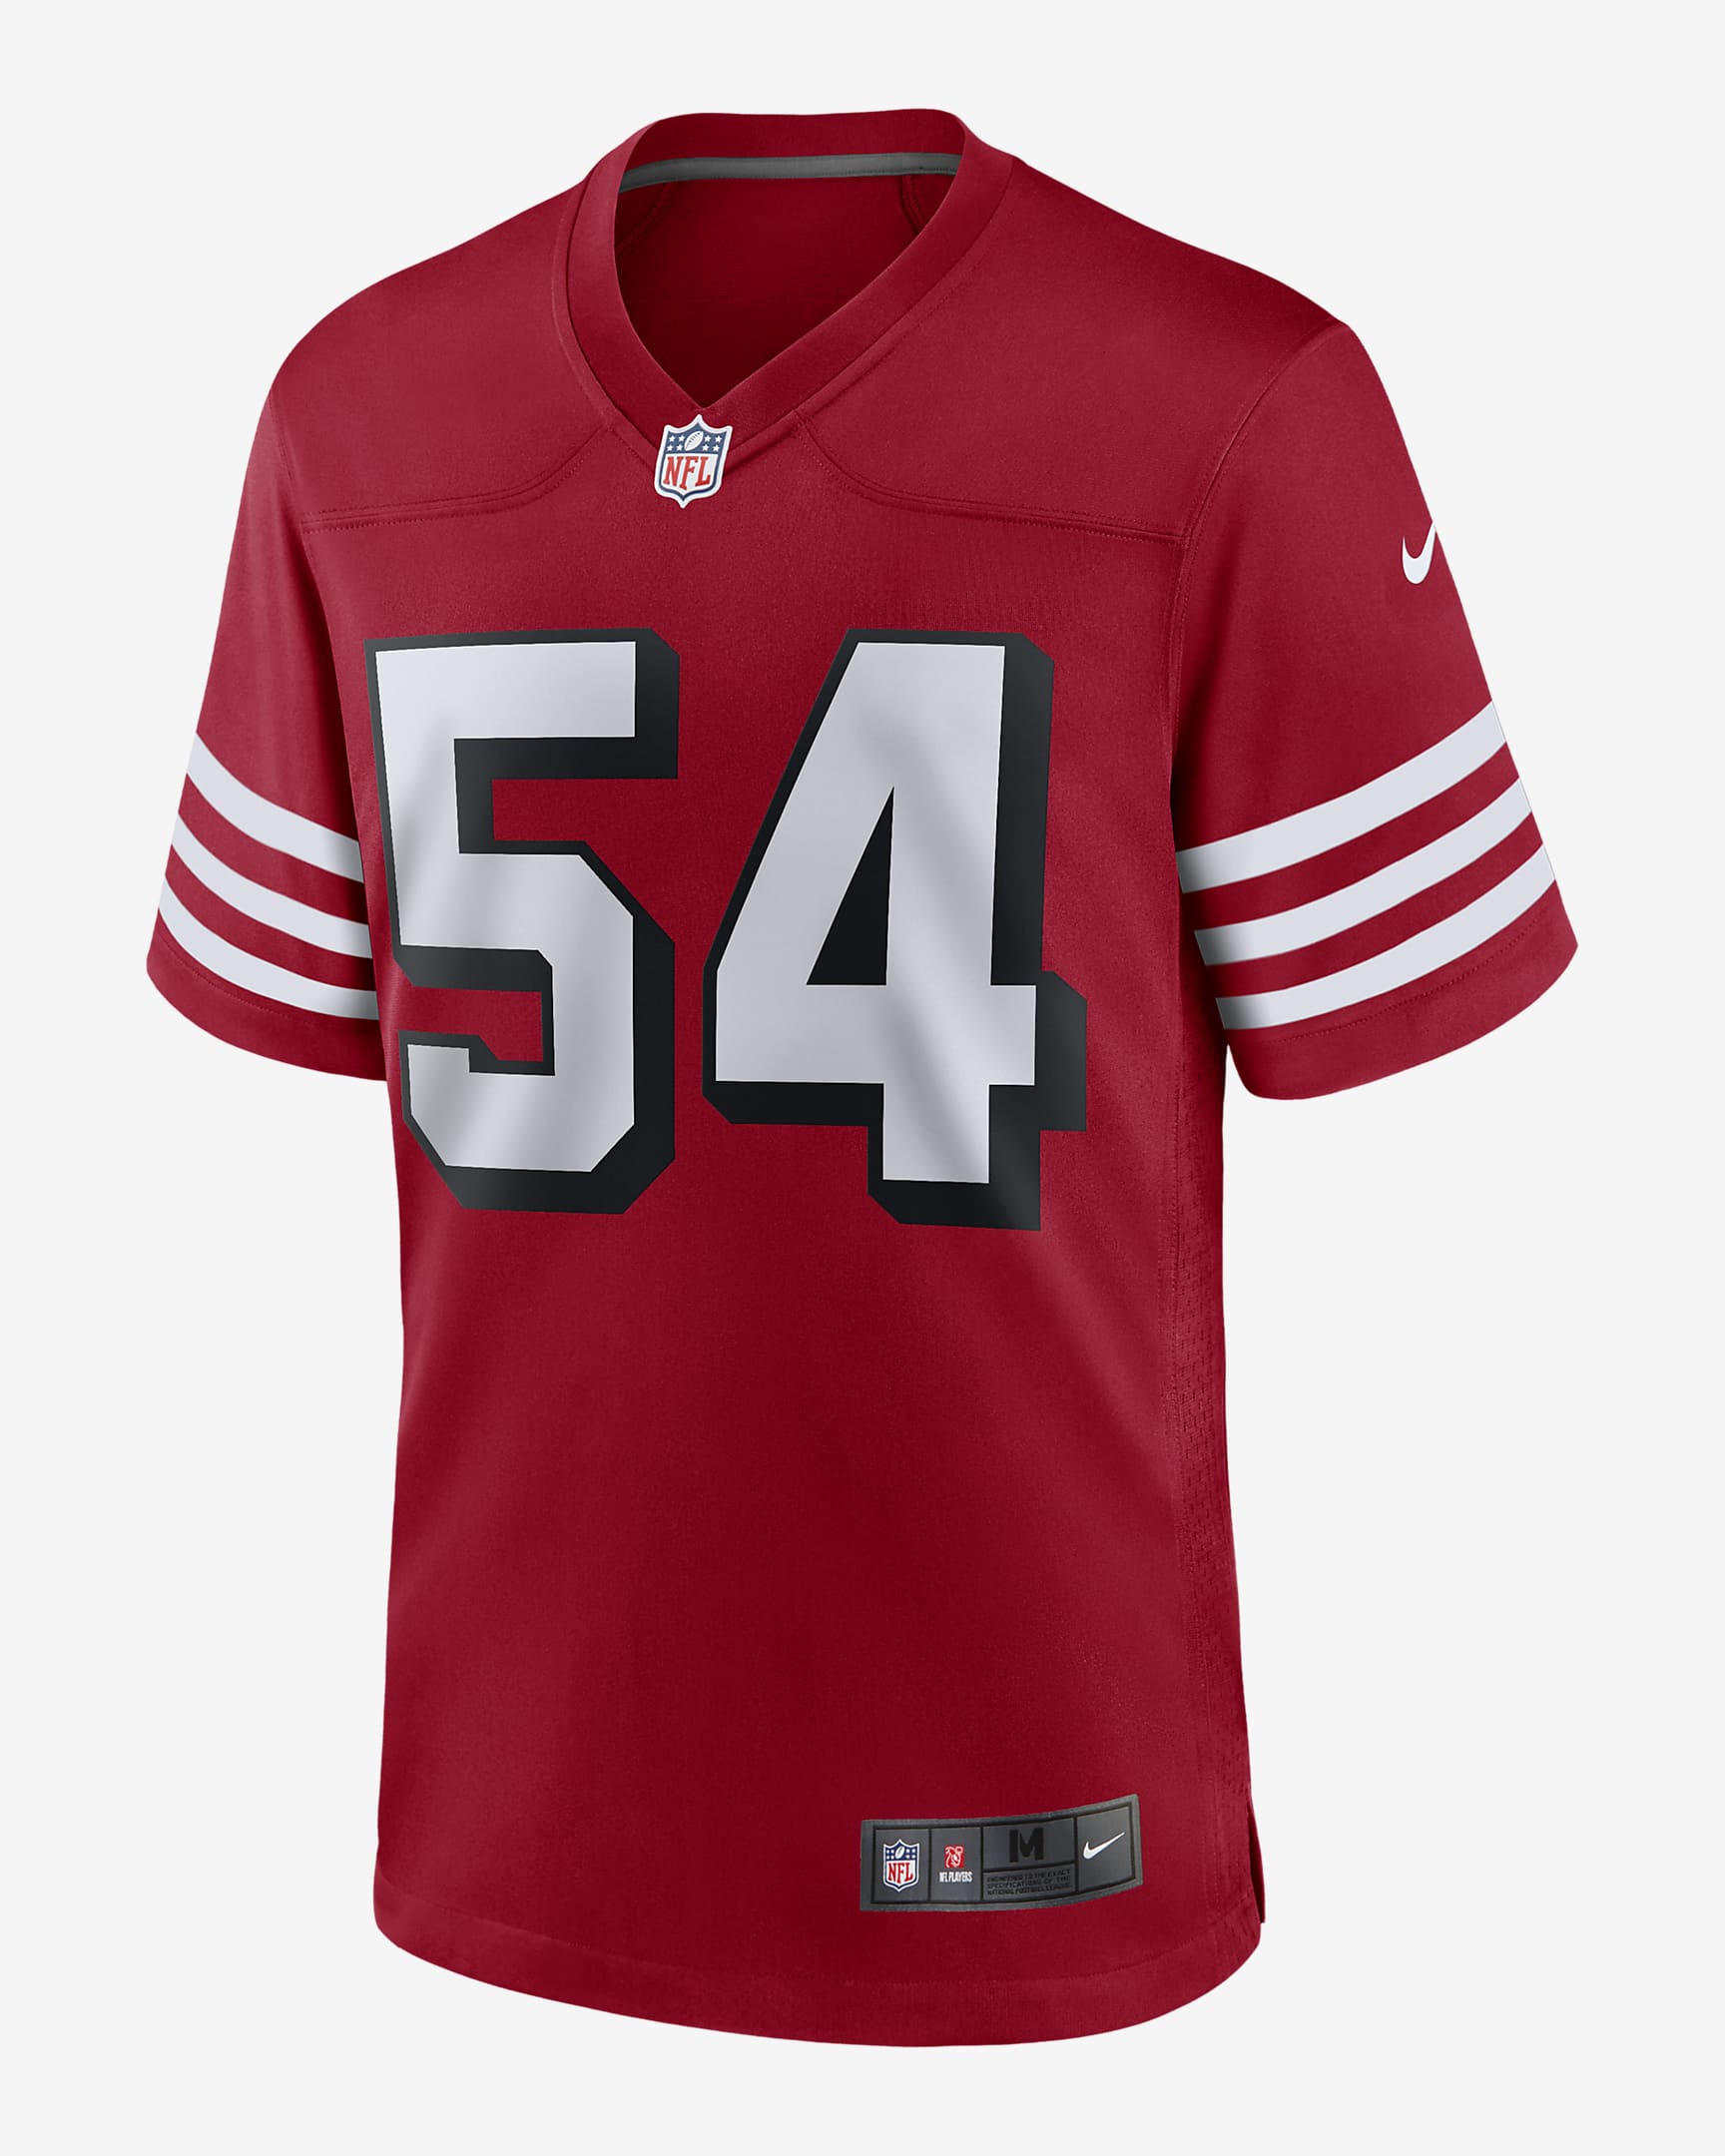 NFL San Francisco 49ers (Fred Warner) Men's Game Football Jersey. Nike.com